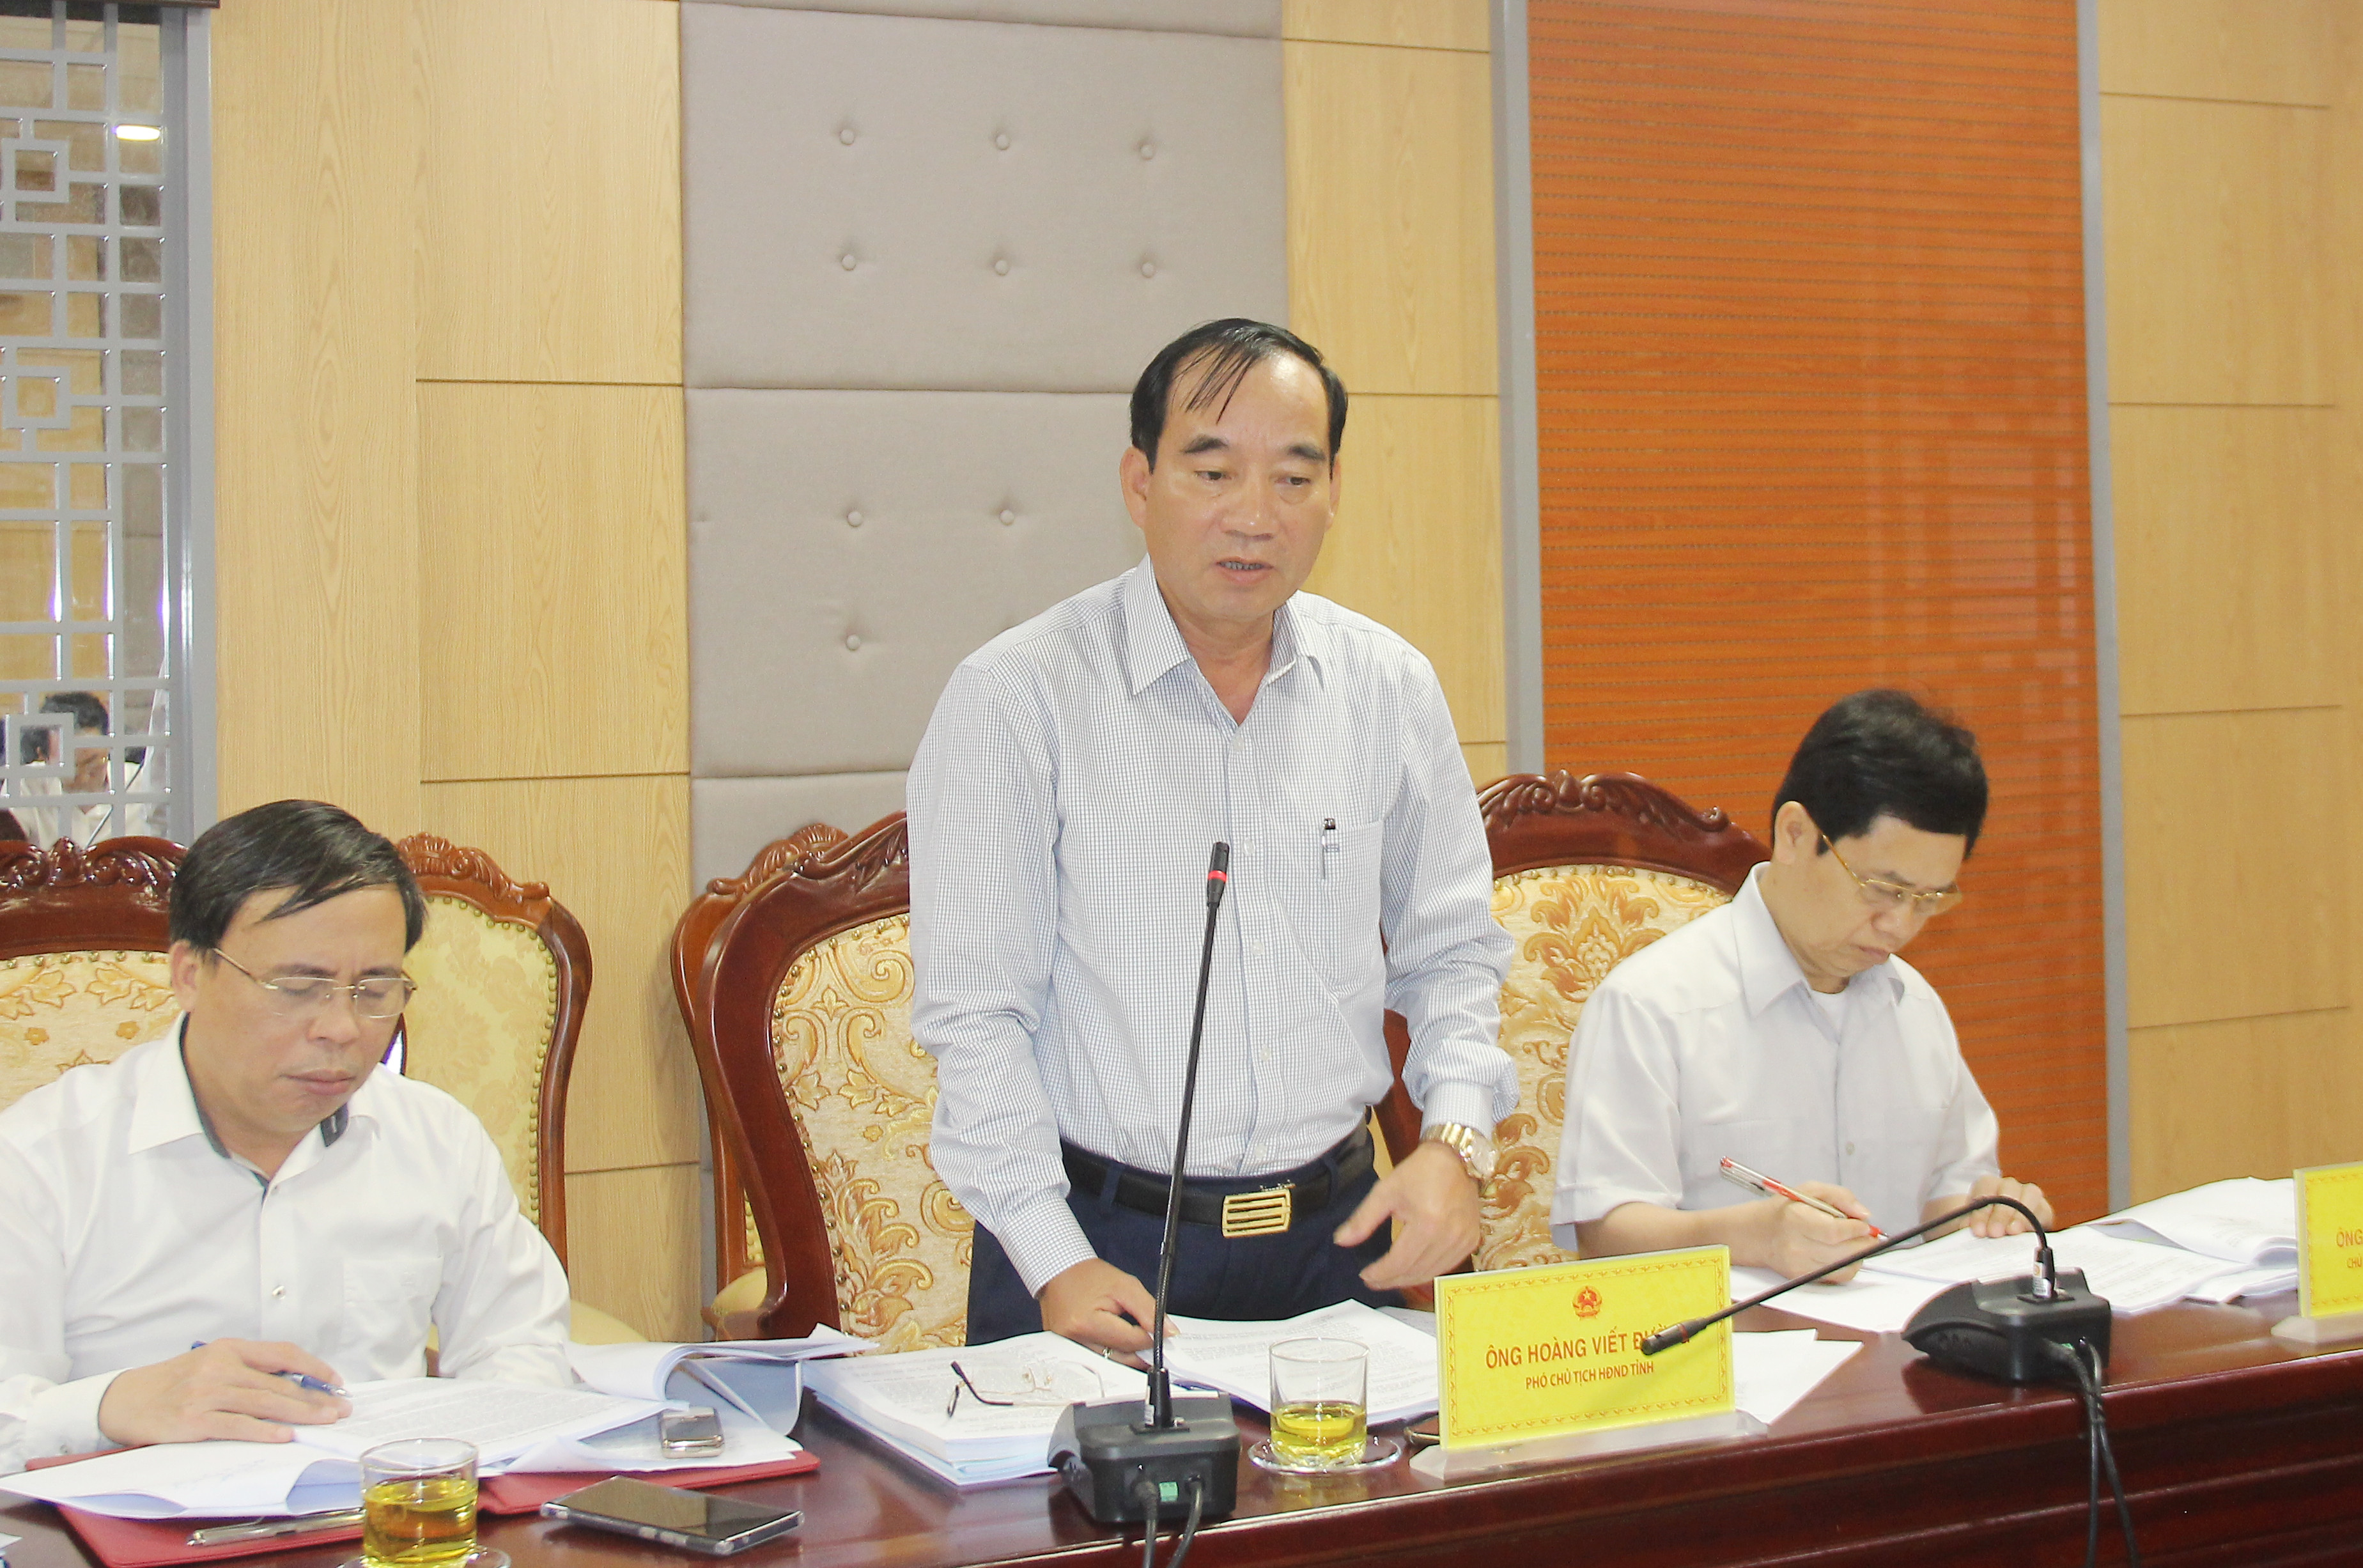 Phó Chủ tịch HĐND tỉnh Hoàng Viết Đường tham gia ý kiến về việc giao quyền quyết định chủ trương đầu tư một số dự án đầu tư cho UBND tỉnh theo Luật đầu tư công năm 2019. Ảnh: Mai Hoa